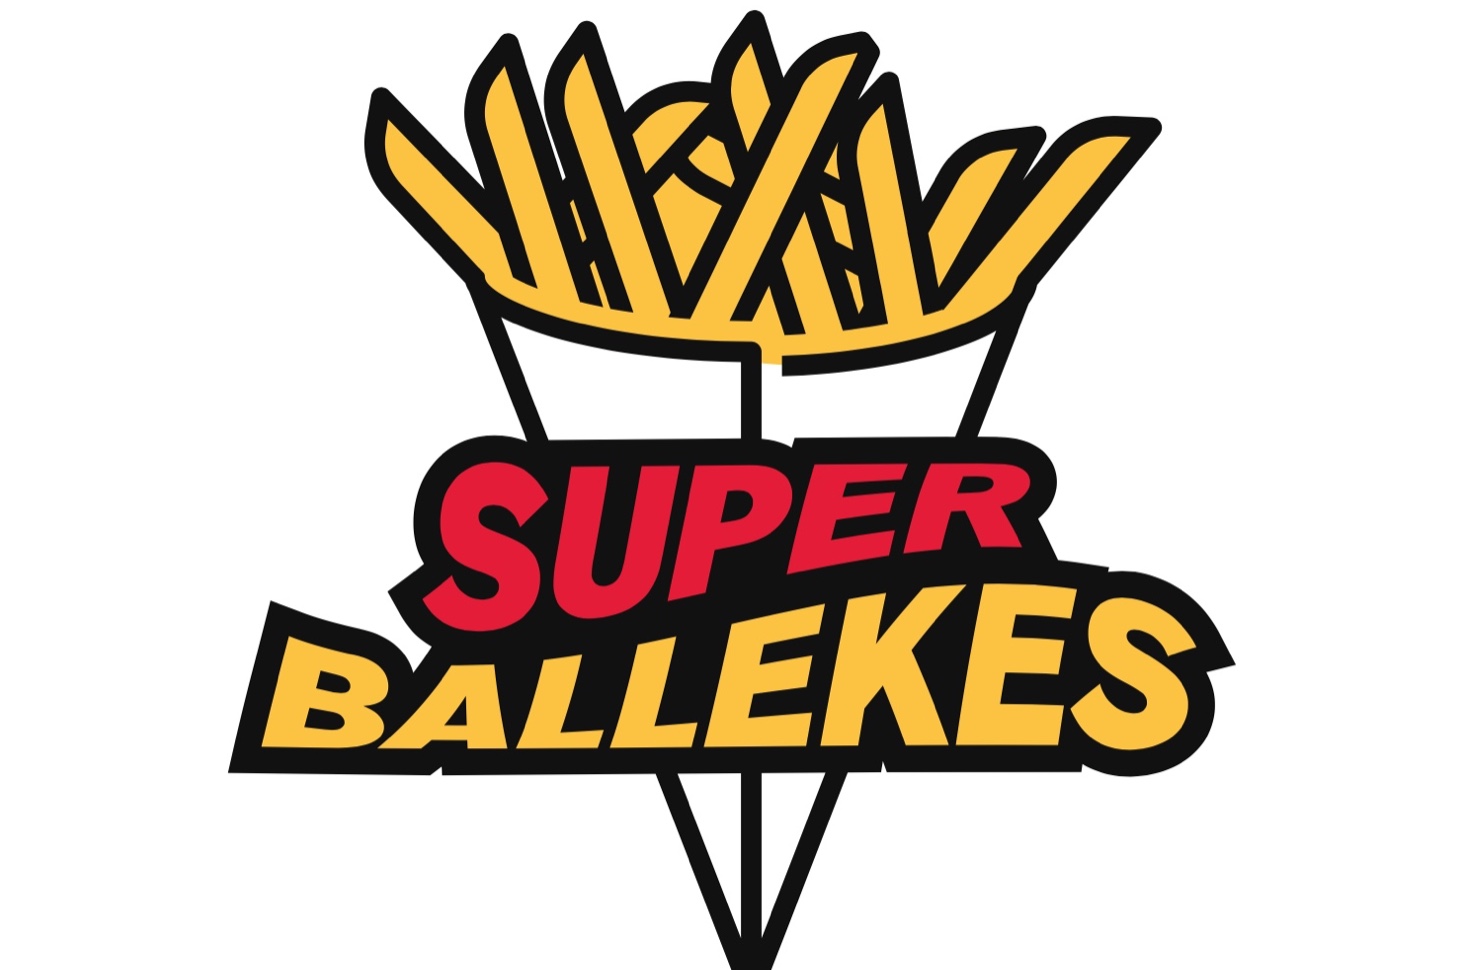 RMB herlanceert de 'Super Ballekes'